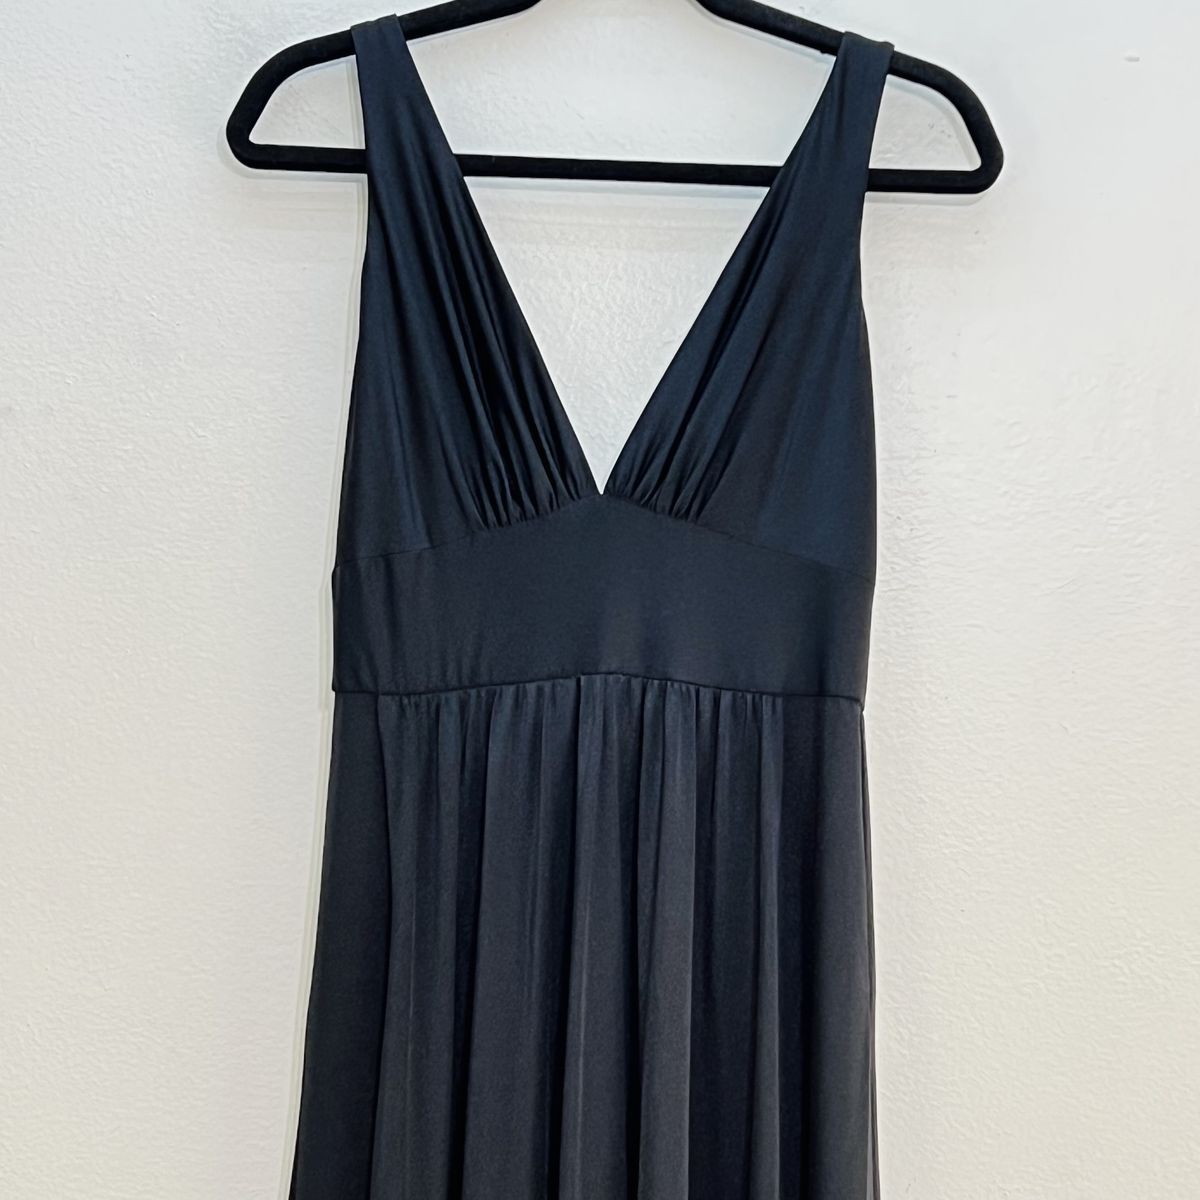 Style 28547 La Femme Size 4 Plunge Black Side Slit Dress on Queenly